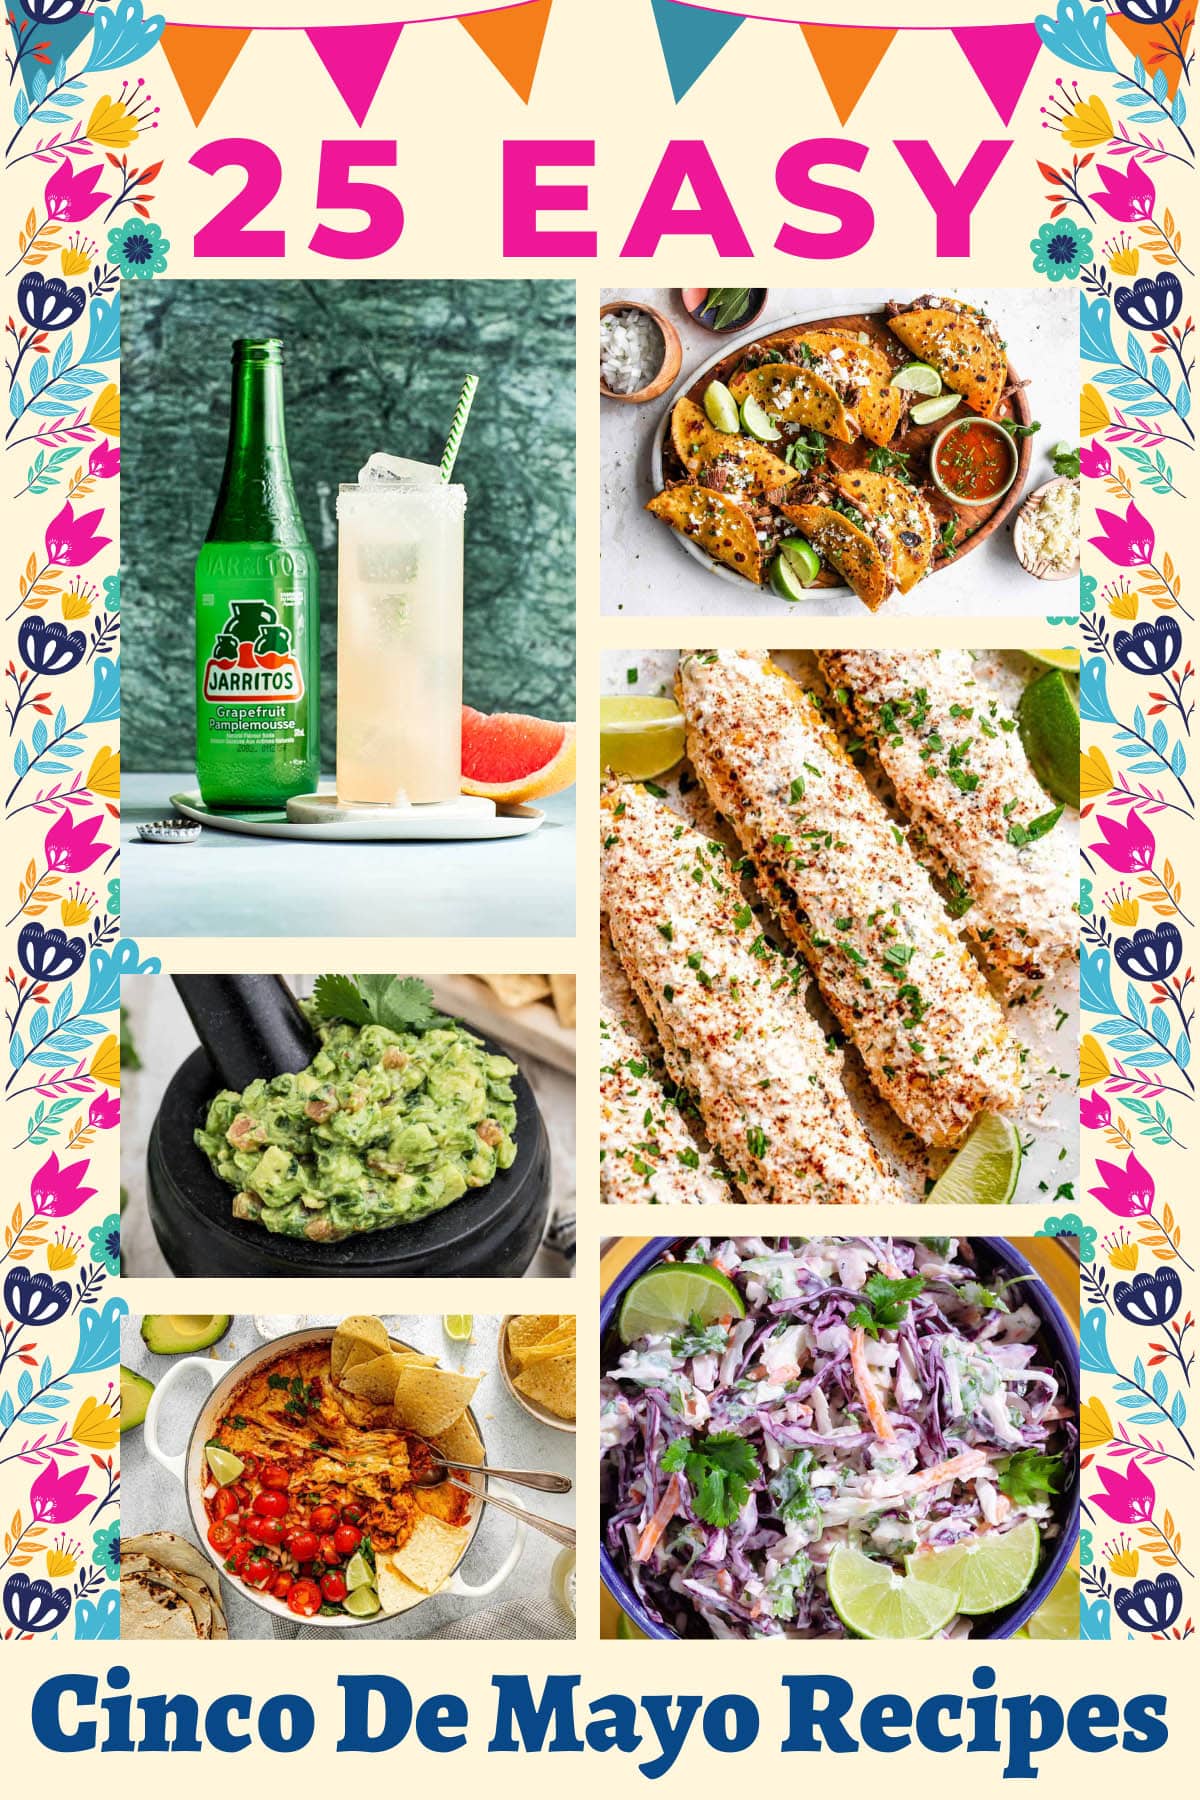 A collage of easy Cinco de Mayo recipes.